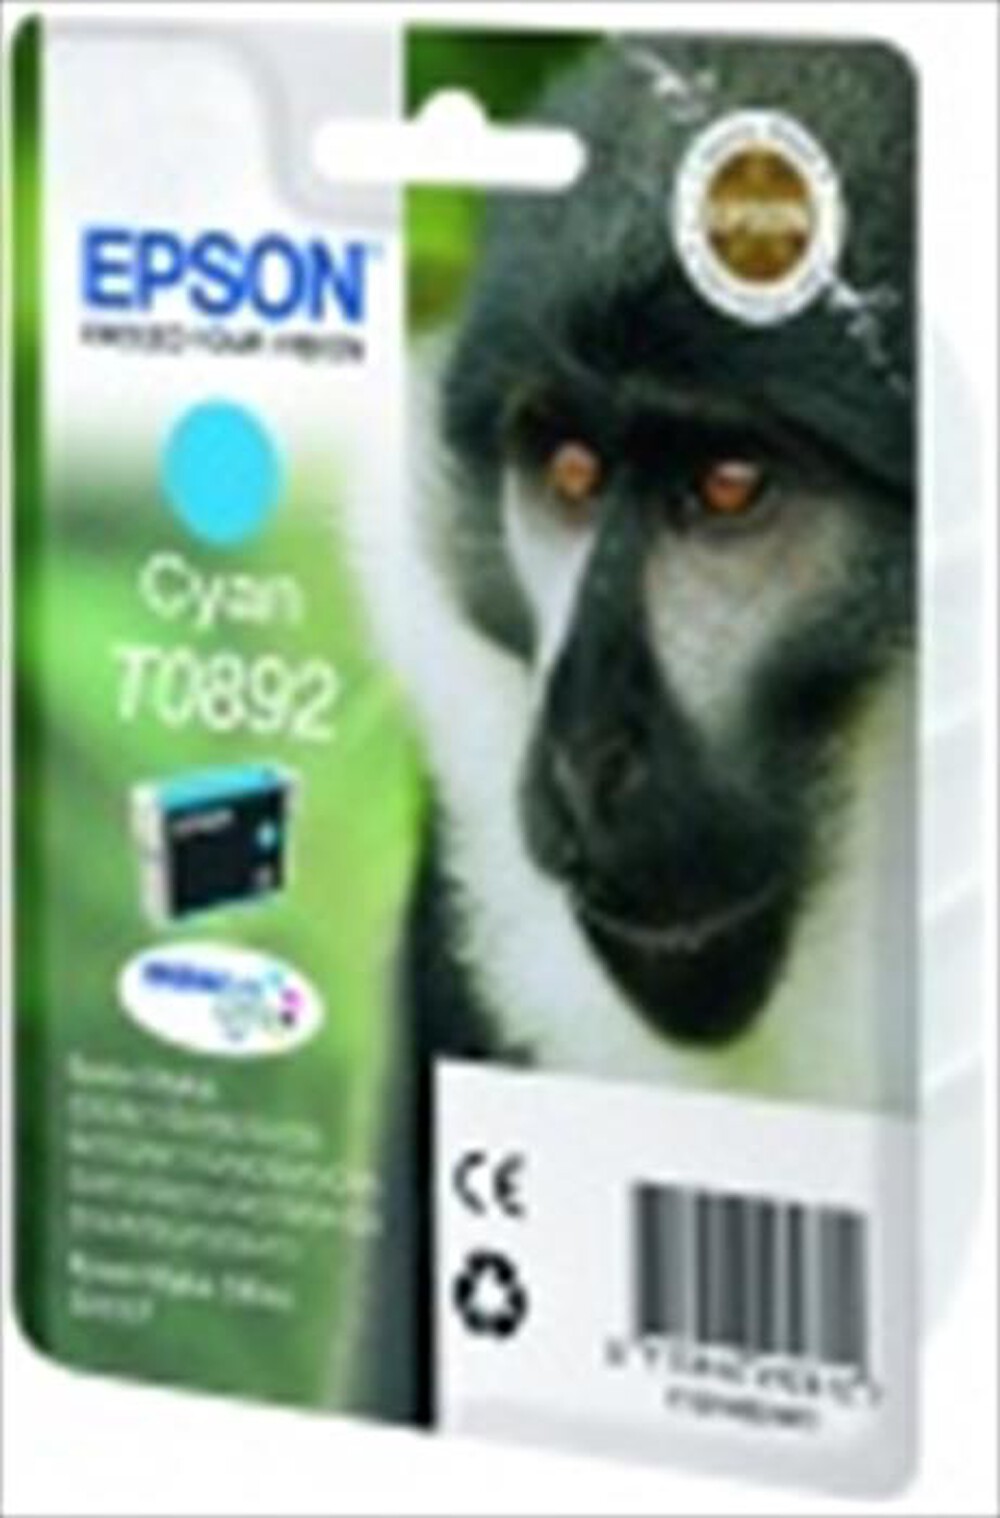 "EPSON - Cartuccia inchiostro ciano C13T08924021 - Ciano"